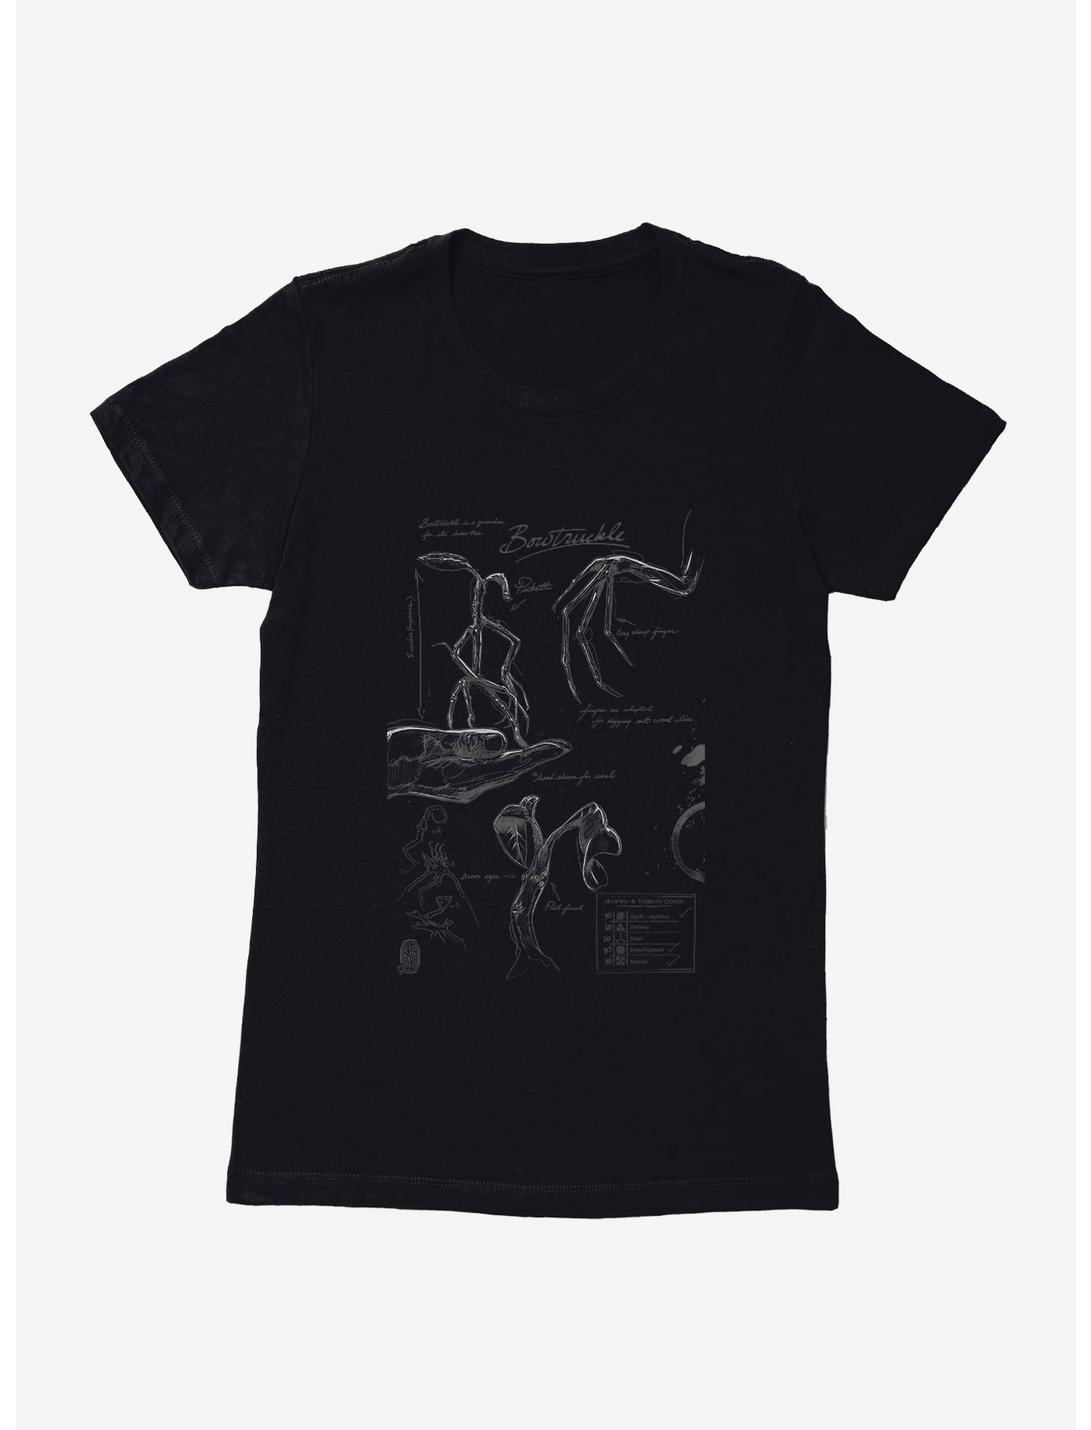 Fantastic Beasts Bowtruckle Sketches Womens T-Shirt, BLACK, hi-res